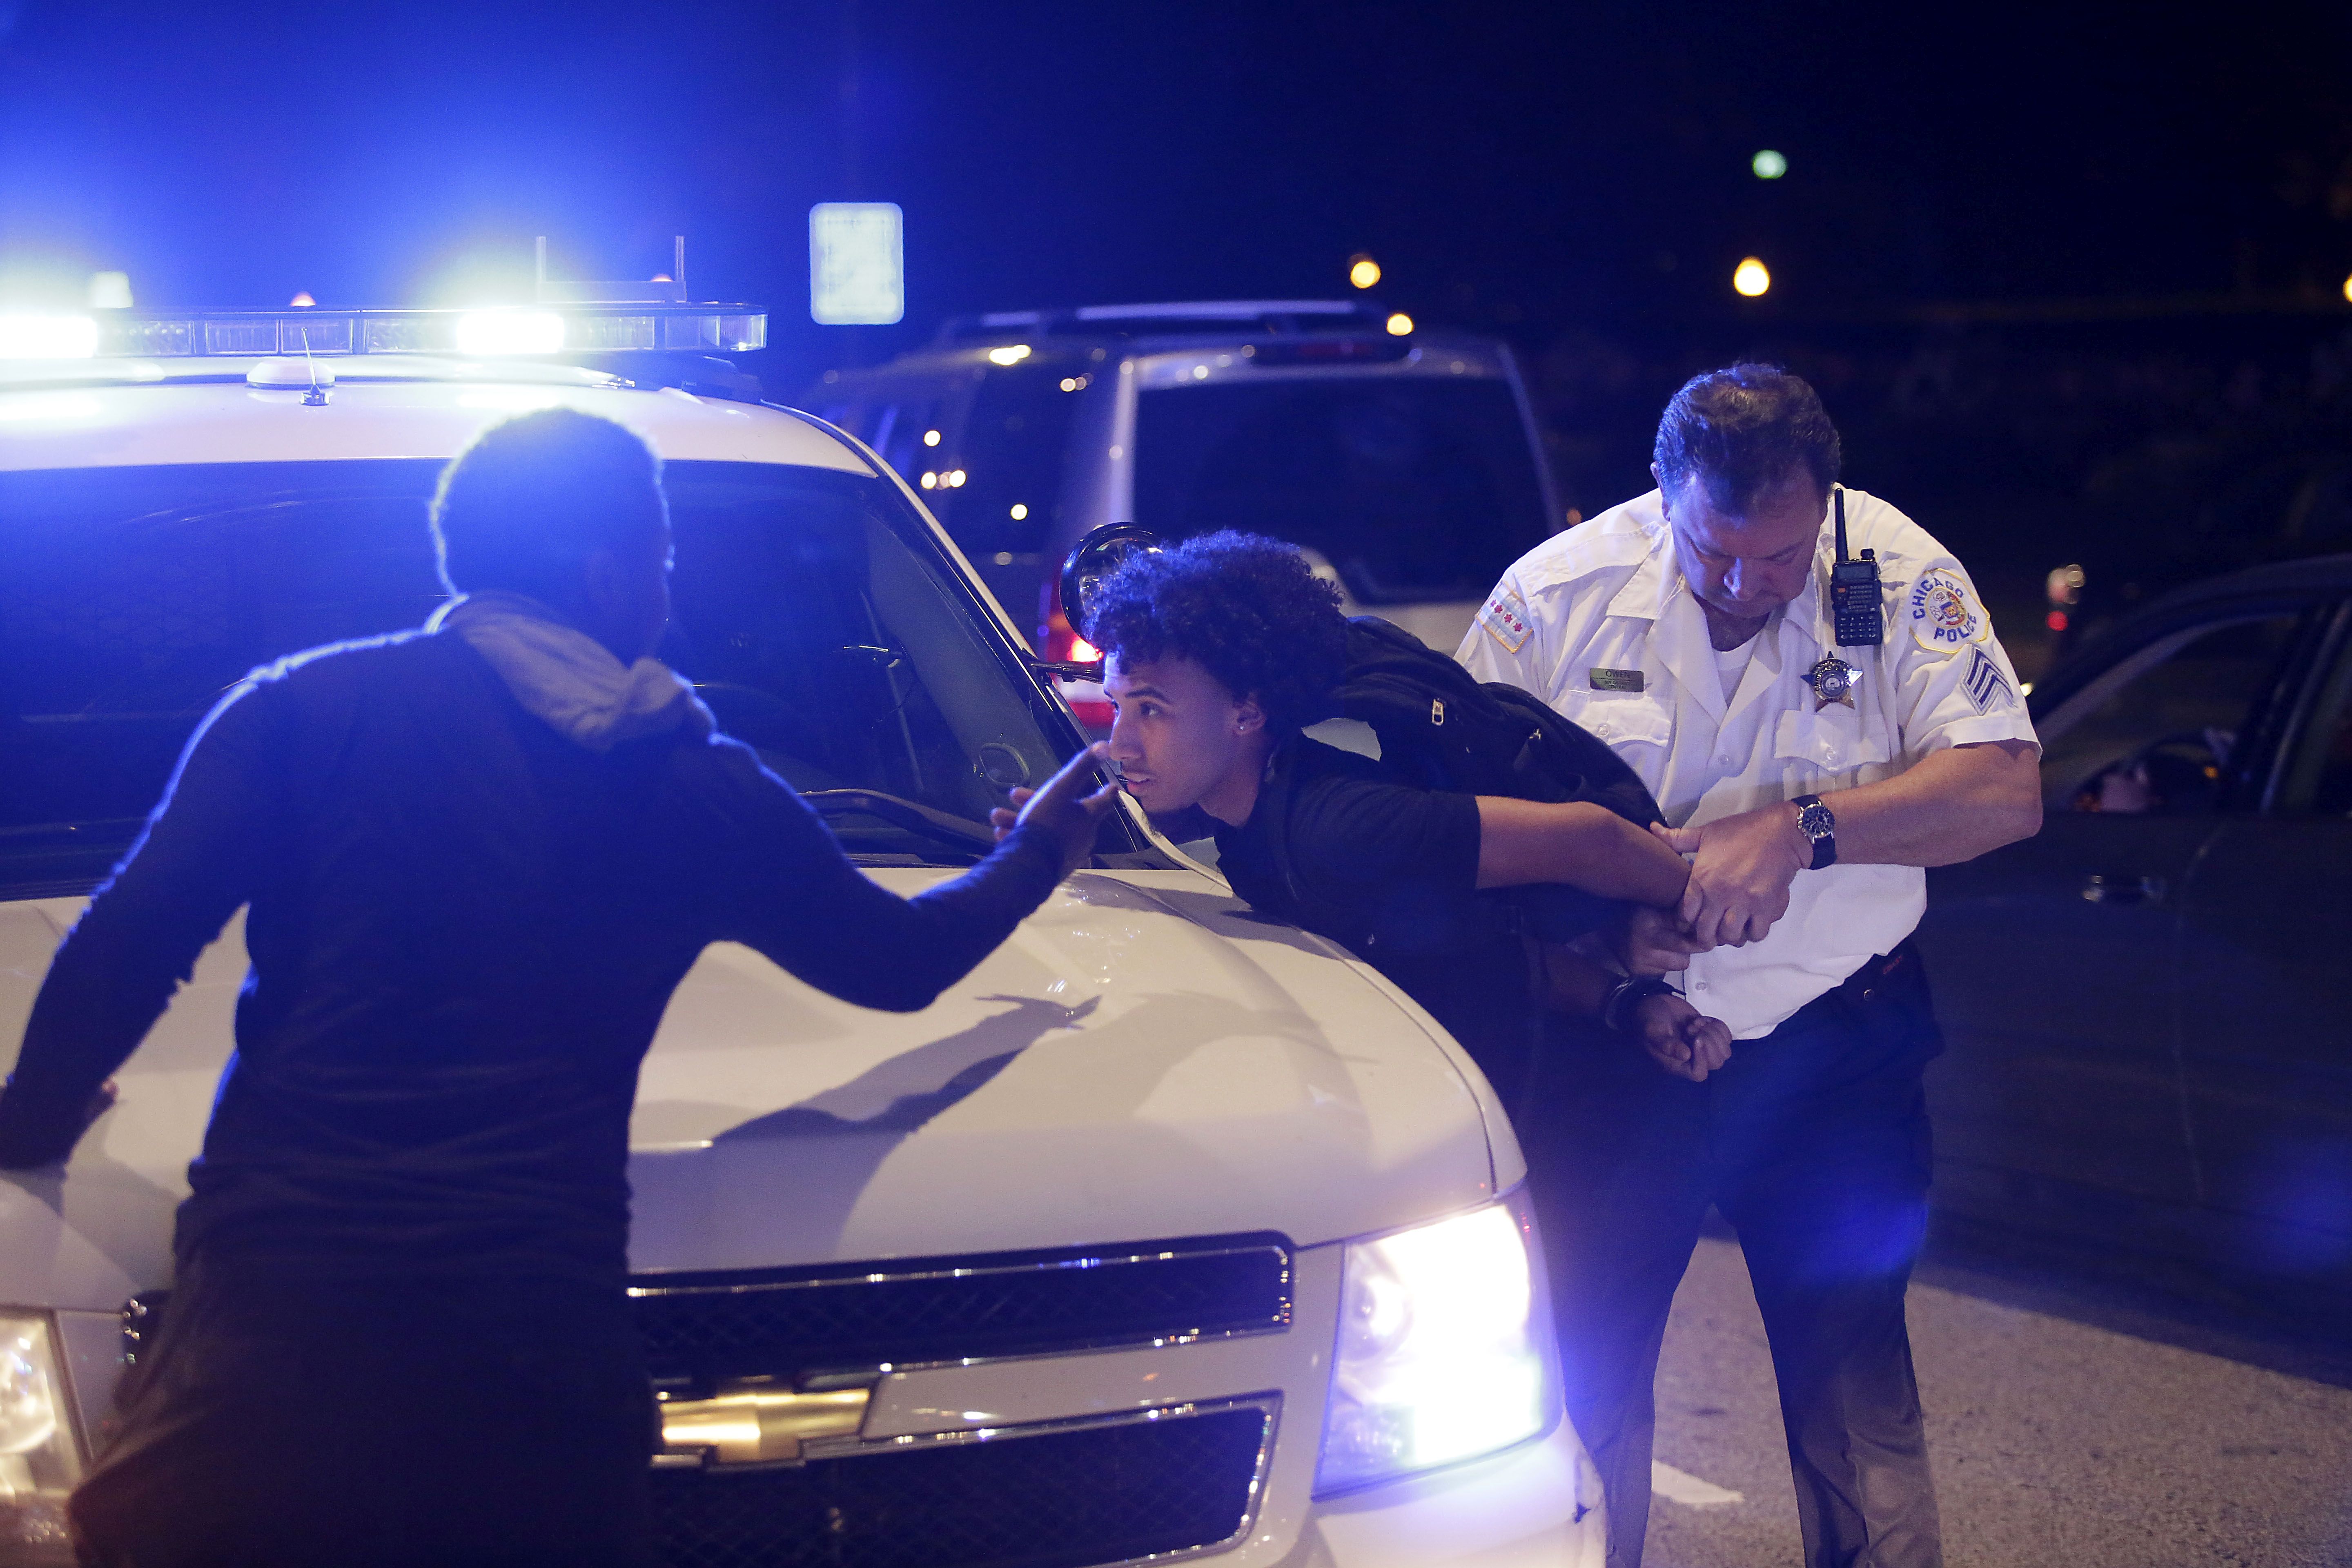 Csak azért, mert csavarhúzóval szodomizálta afroamerikai áldozatát, Scott Korhonen még rendőr maradhat Chicagóban